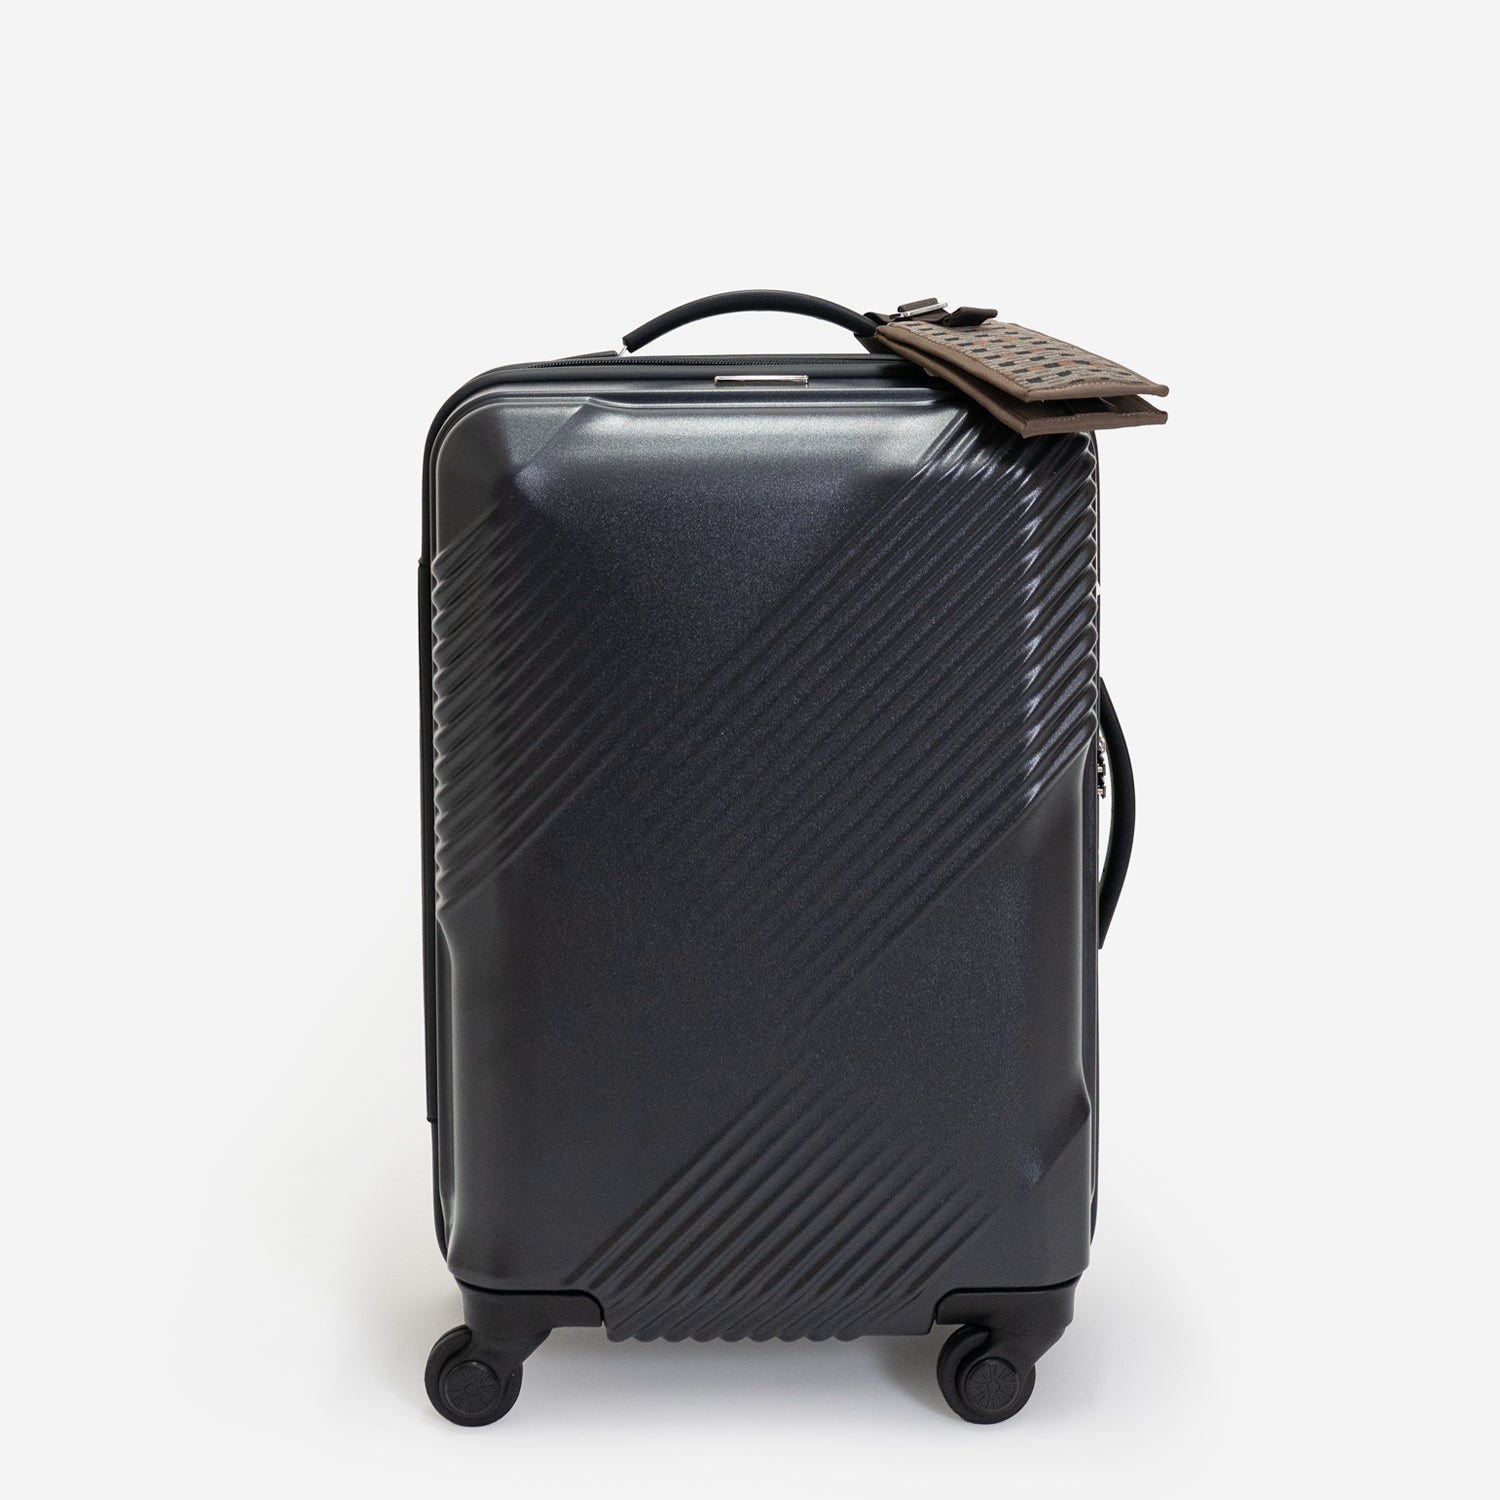 新品未使用スーツケース71ℓ シルバー Hard Carry ハードキャリー - バッグ